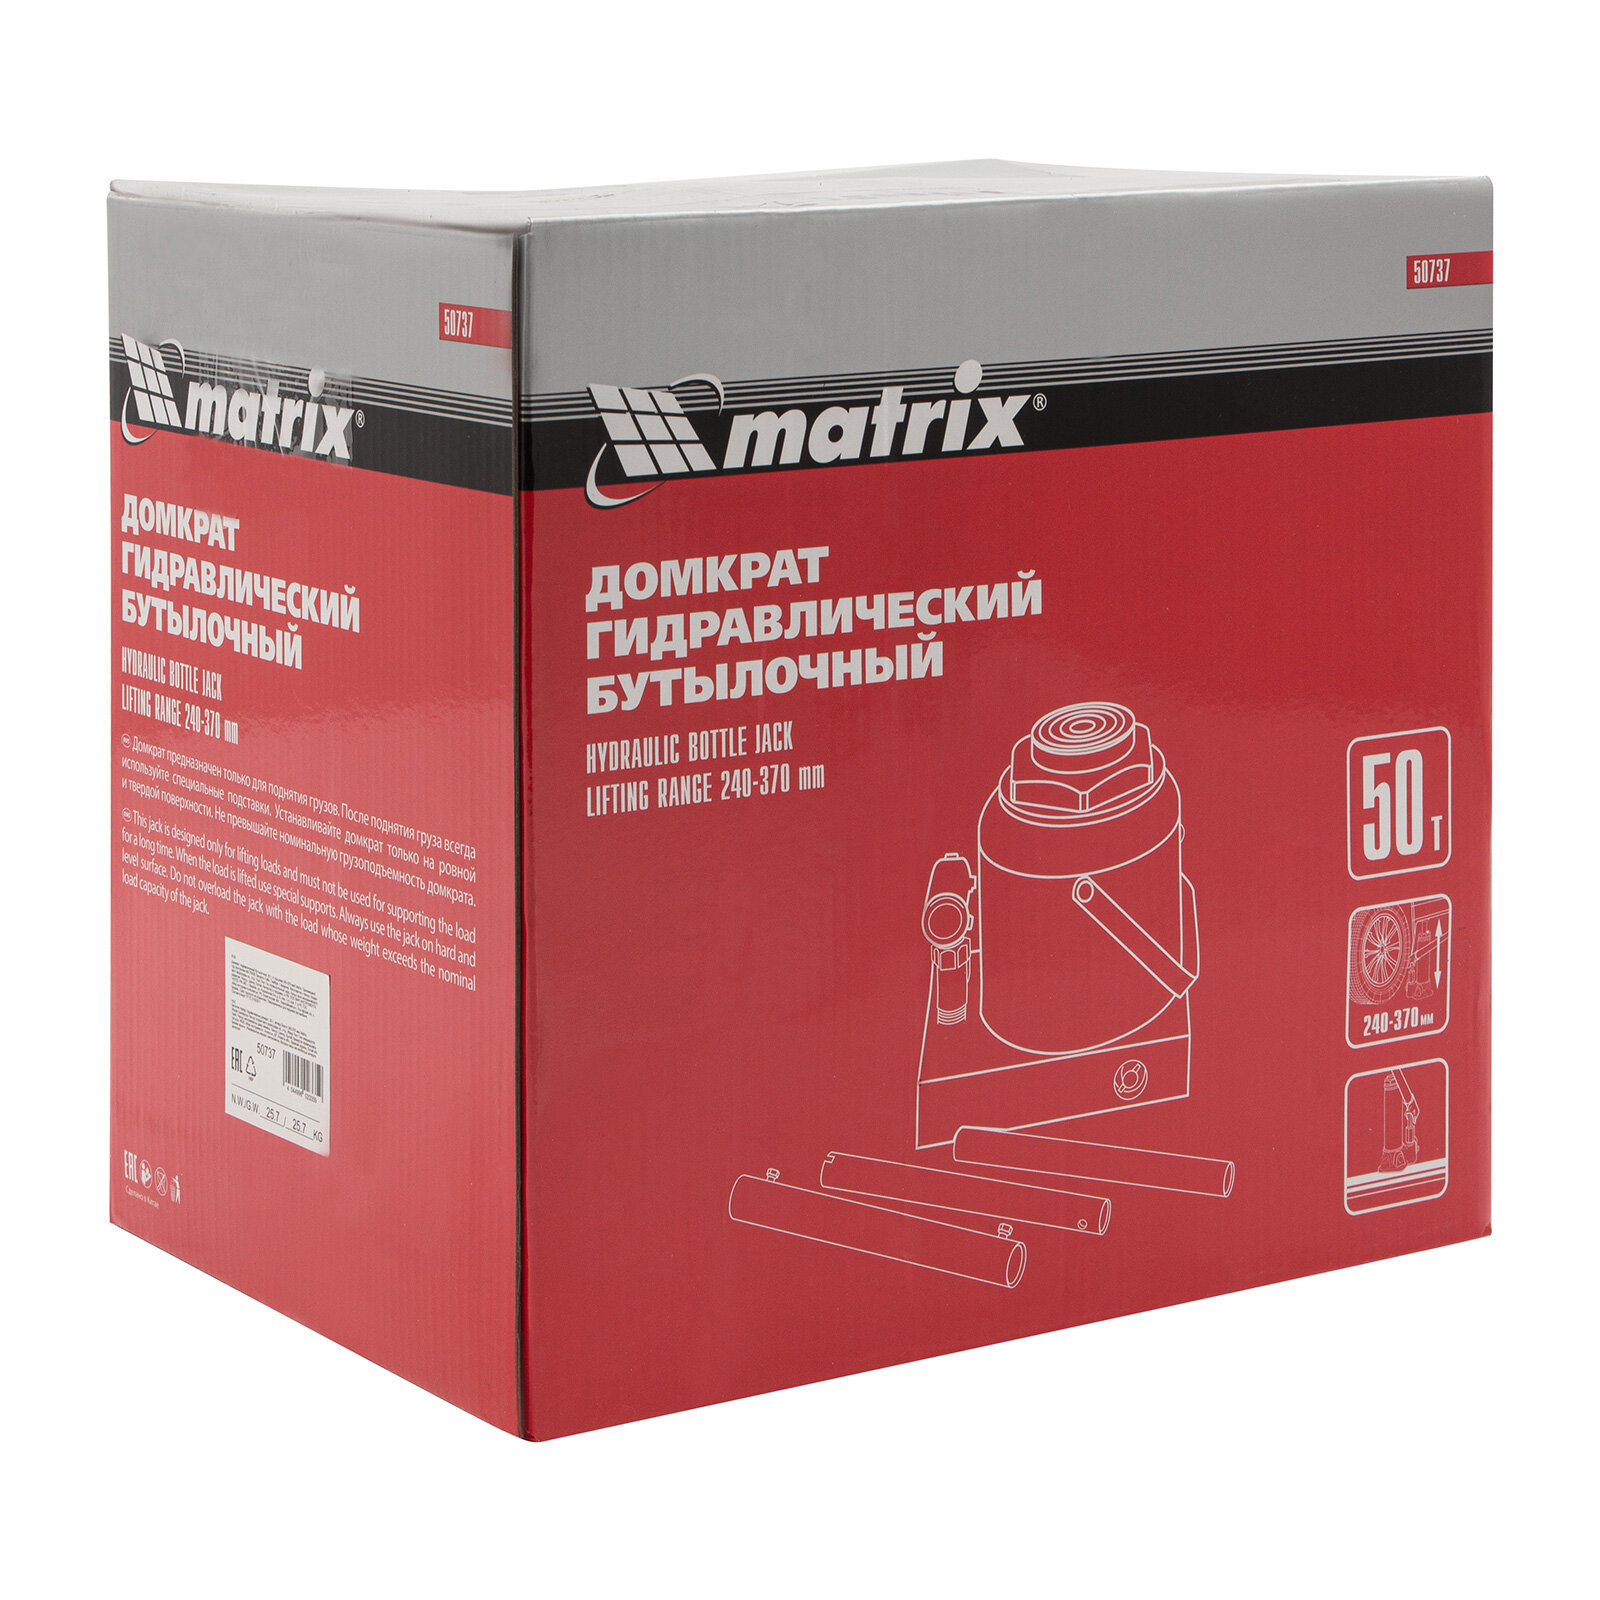 Домкрат бутылочный гидравлический matrix 50737 (50 т)